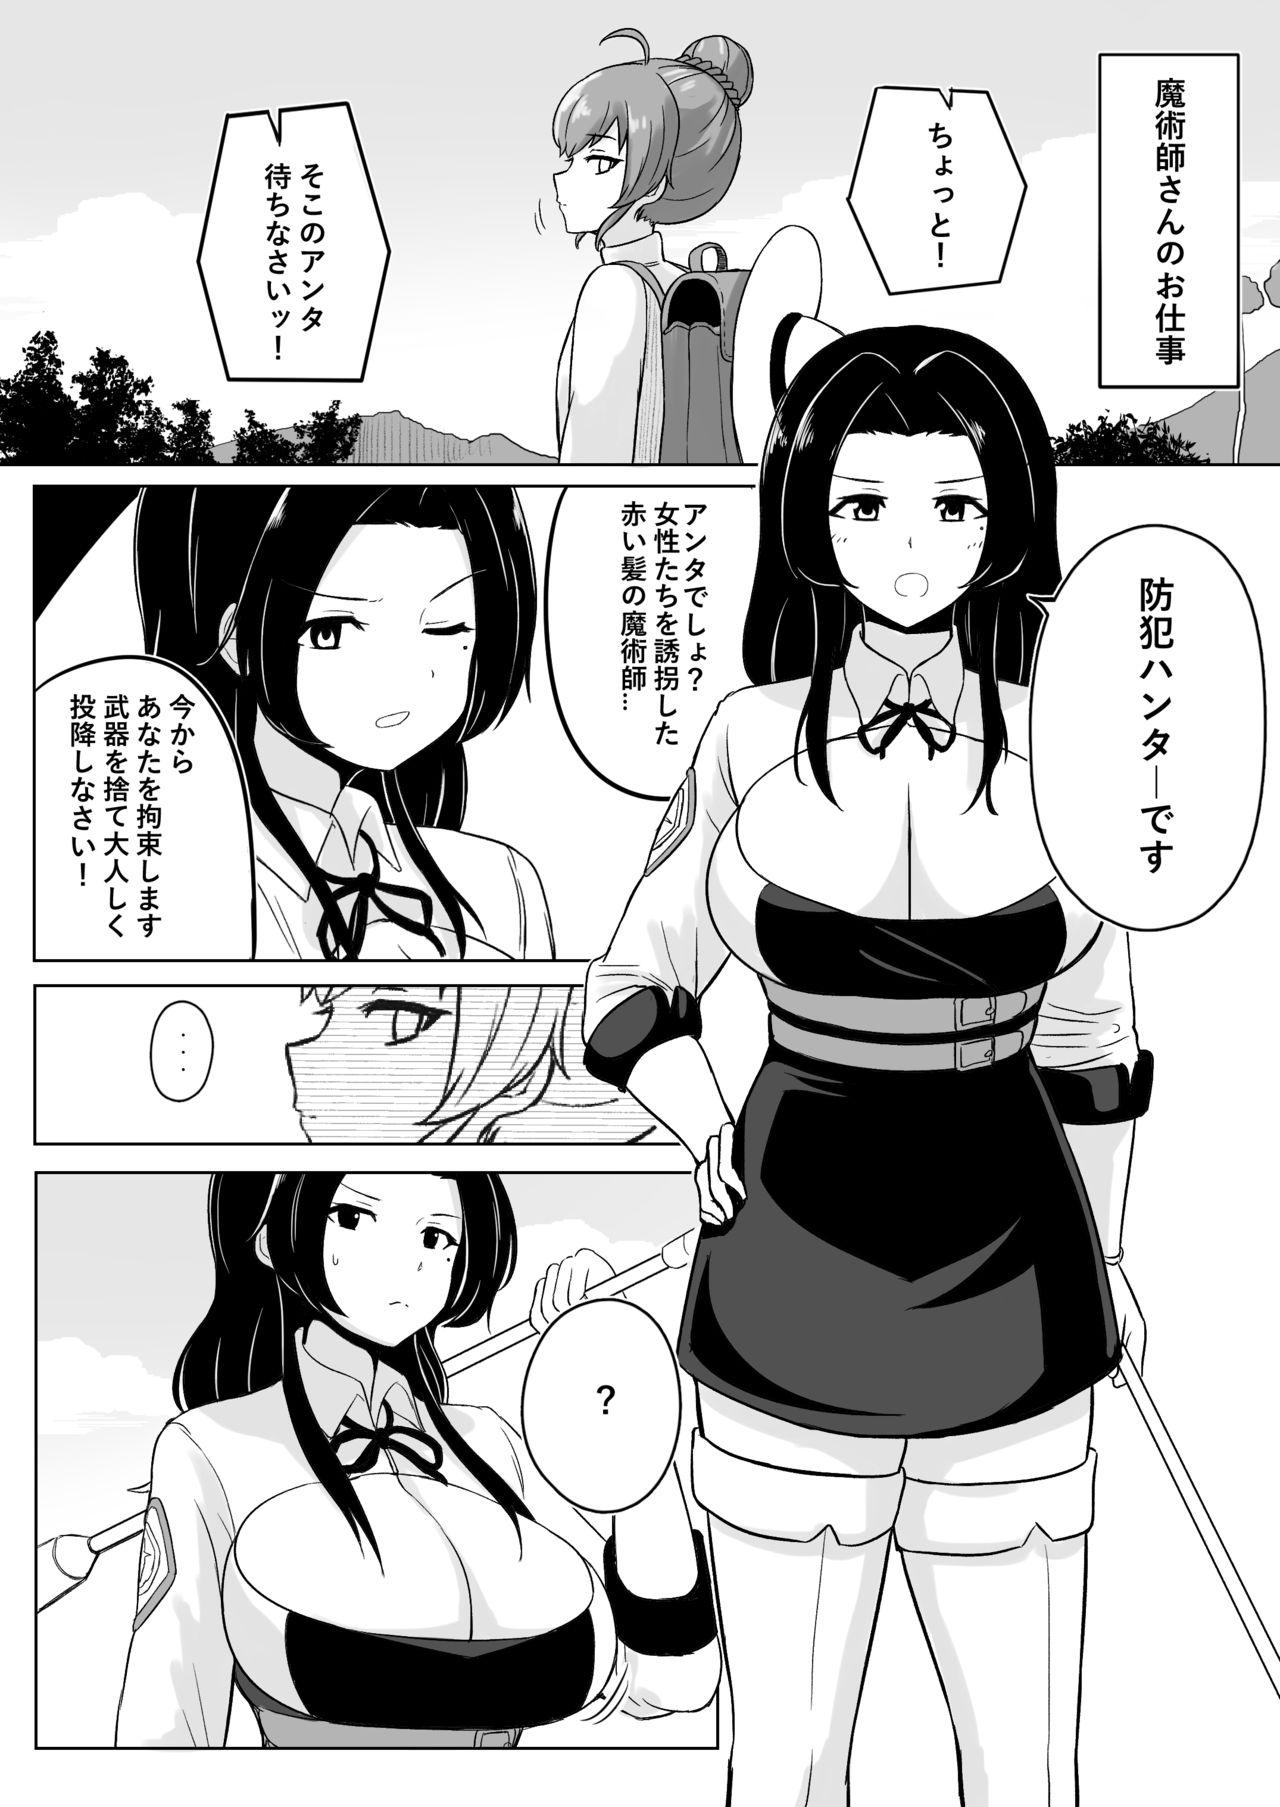 Ikedori Series 4 Page Manga 1